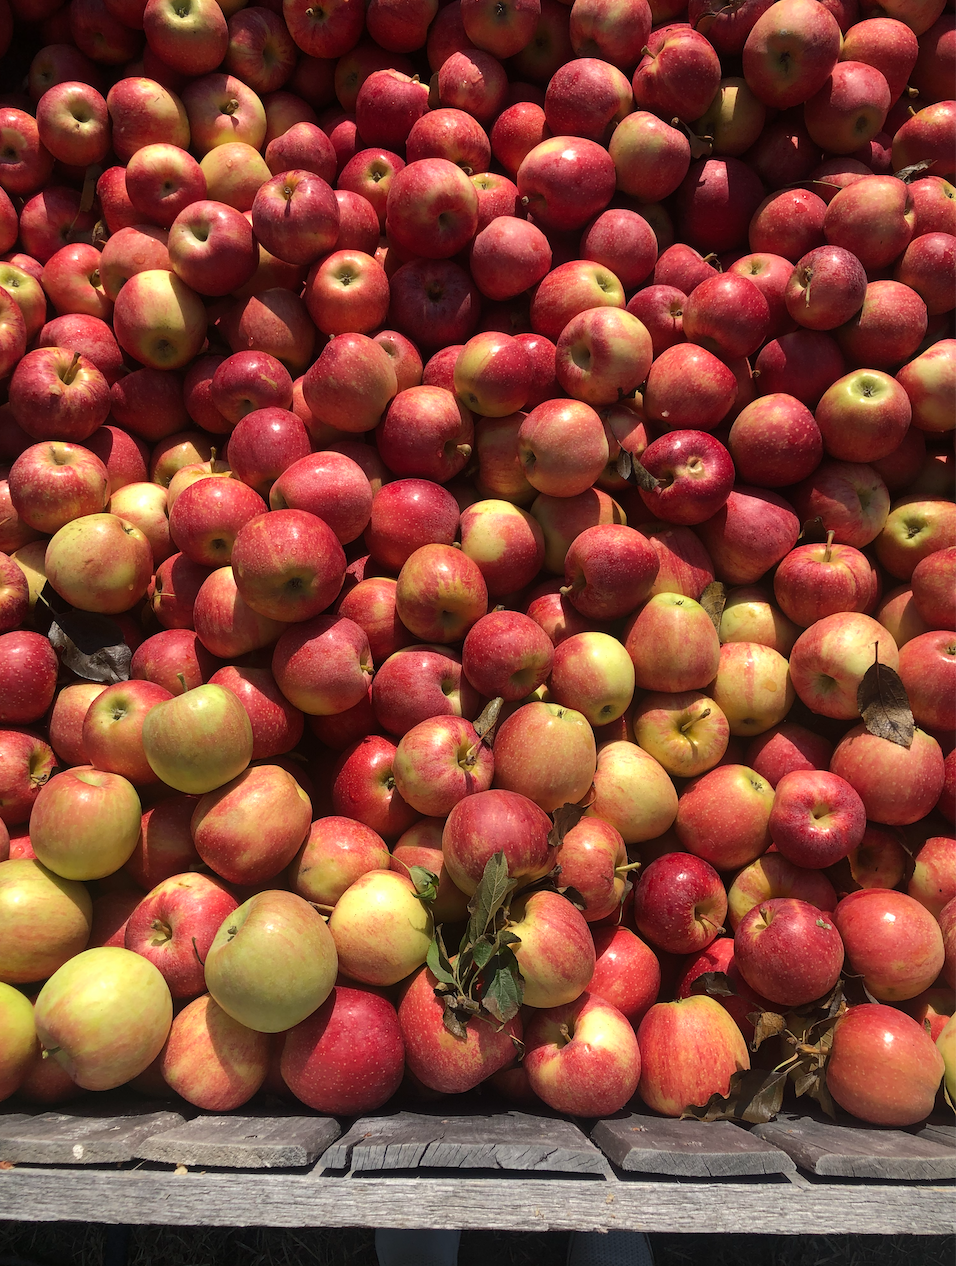 joyful eats faves movement apples farm fresh produce